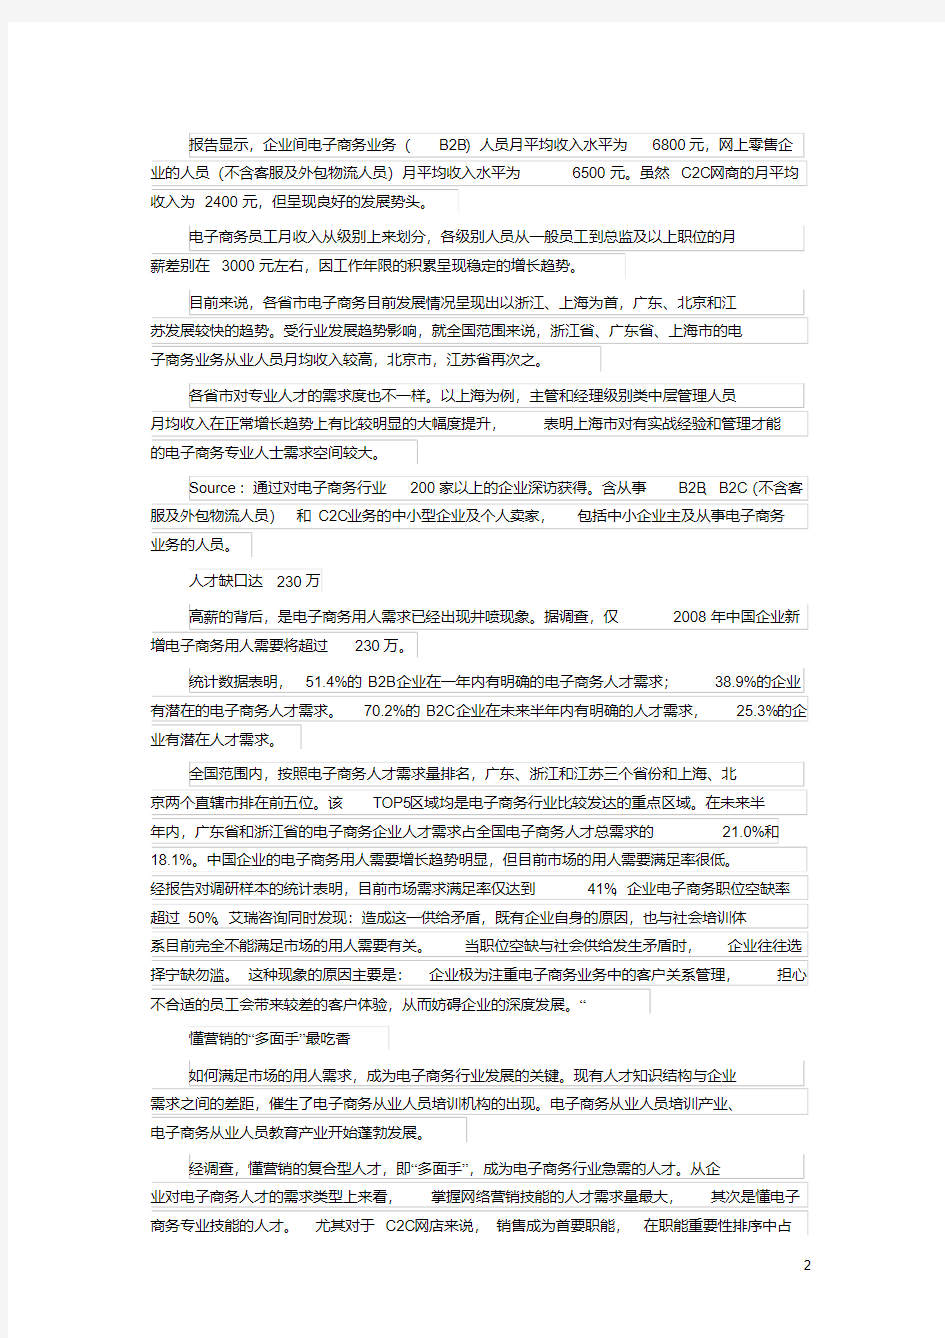 《中国电子商务从业人员职业发展及薪酬研究报告》文档